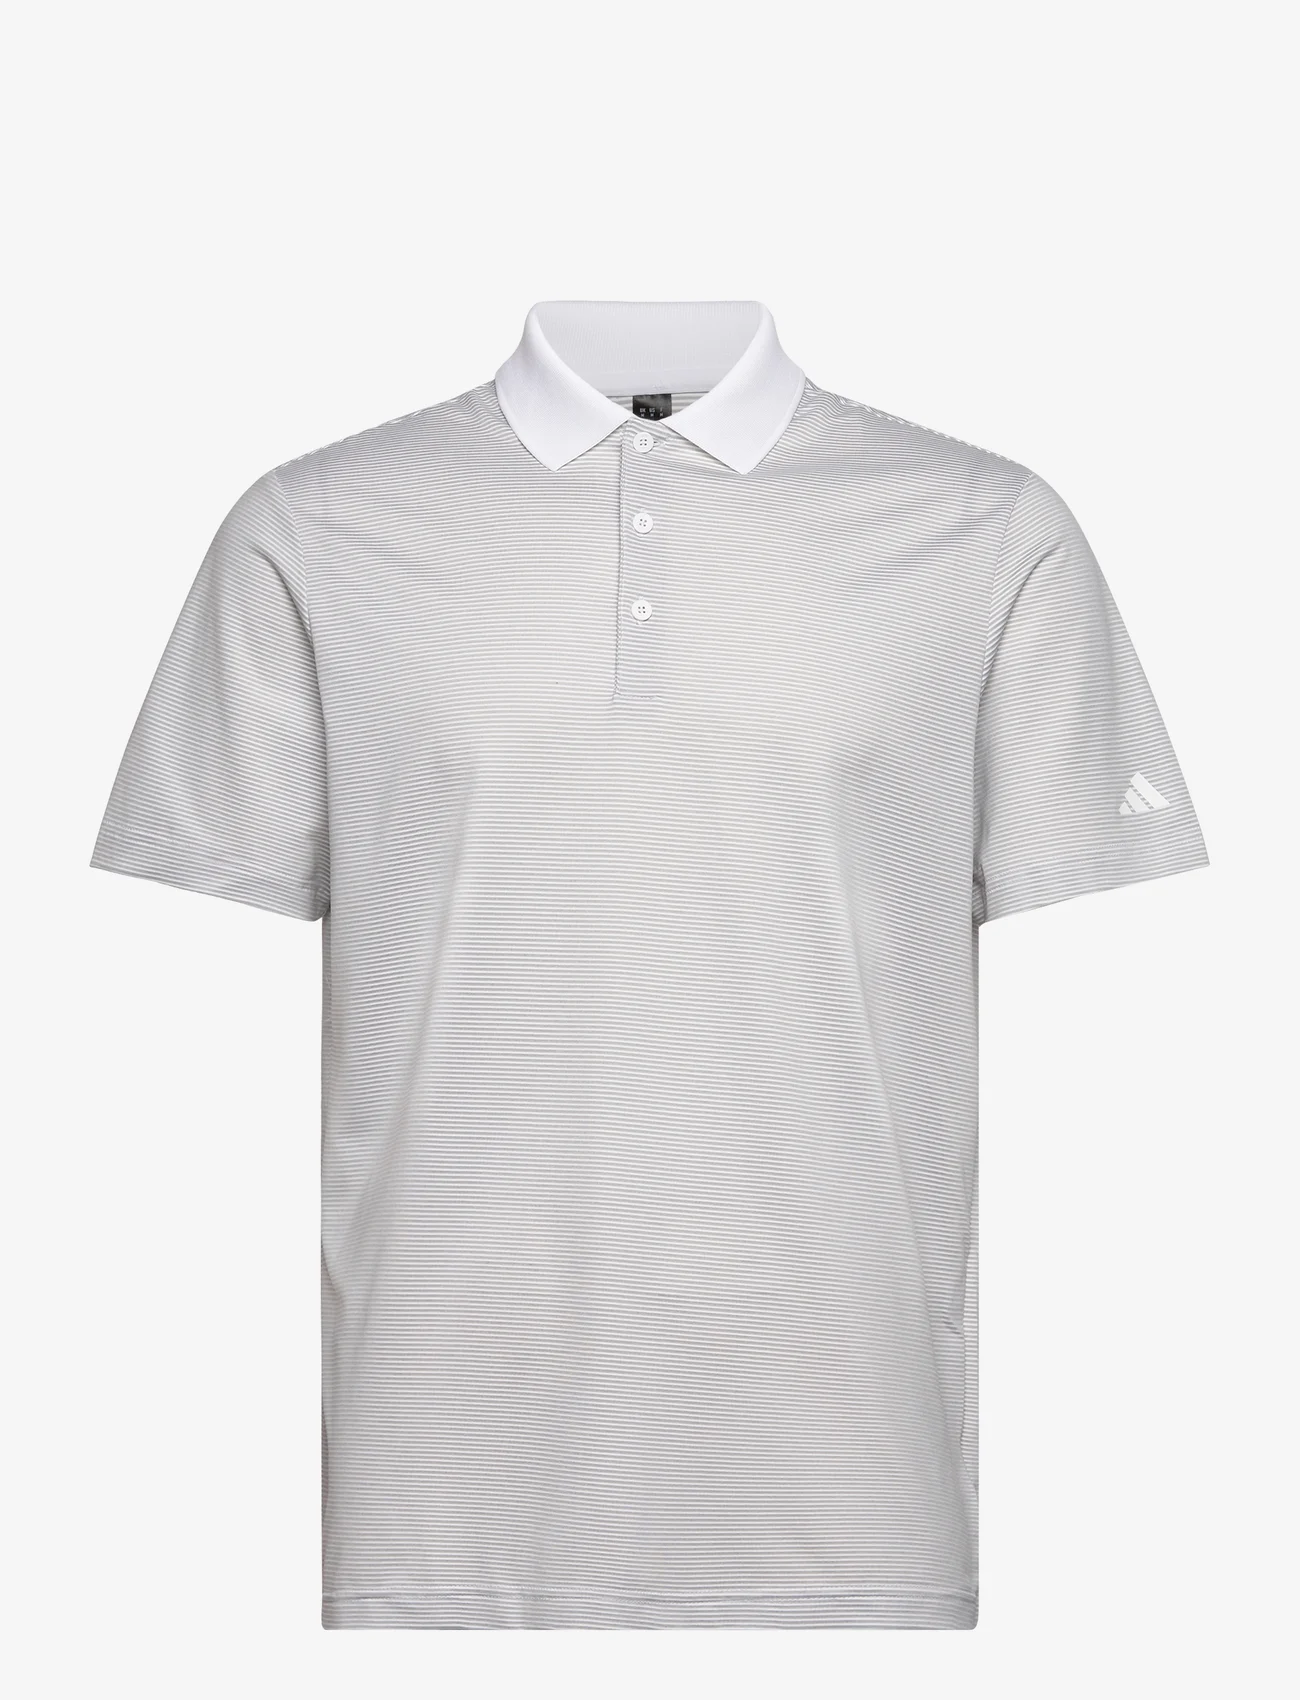 adidas Golf - OTTOMAN POLO - kurzärmelig - white/gretwo - 0